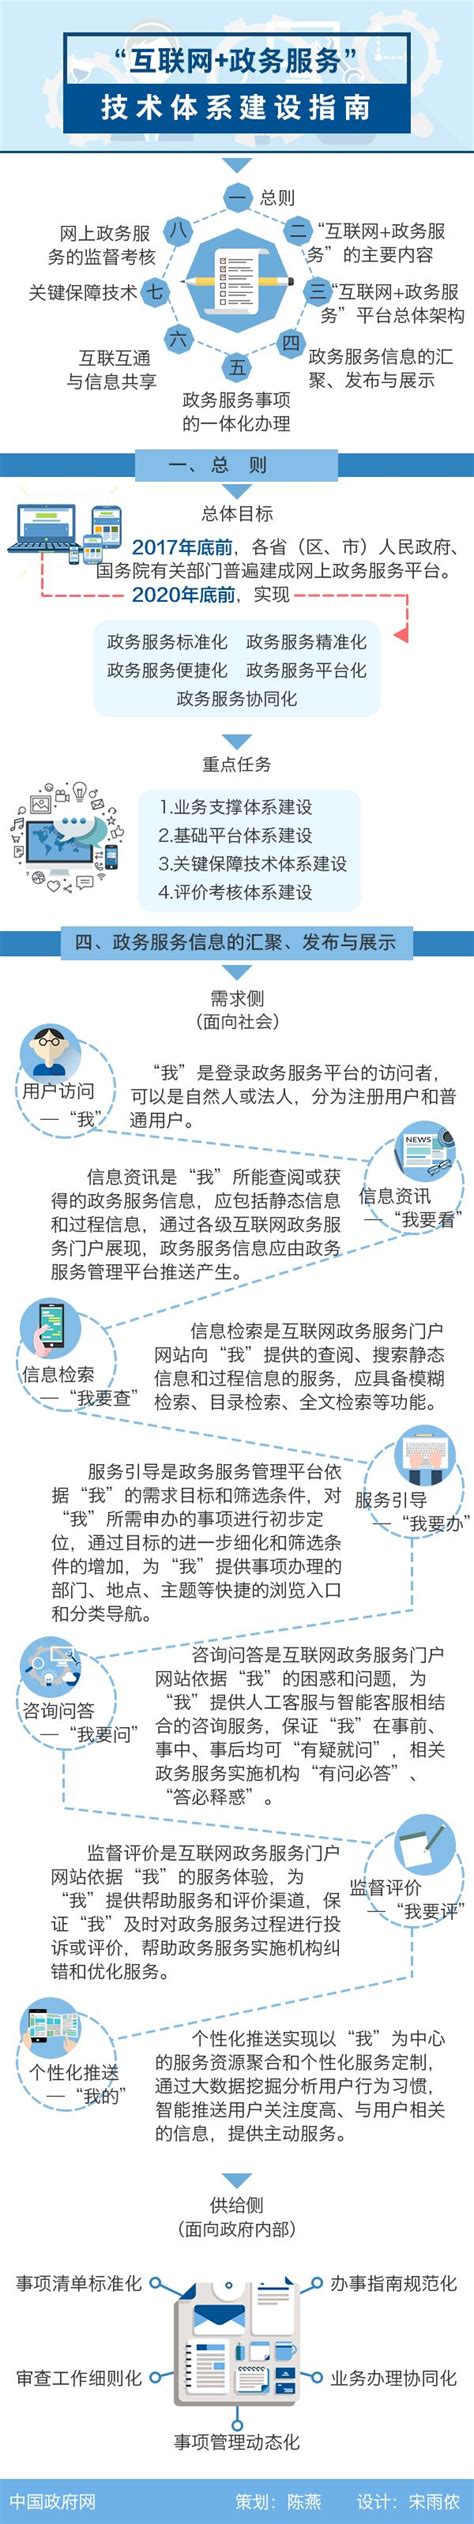 IDC 中国互联网 + 政务服务解决方案市场份额报告正式发布-云计算测评-上云无忧